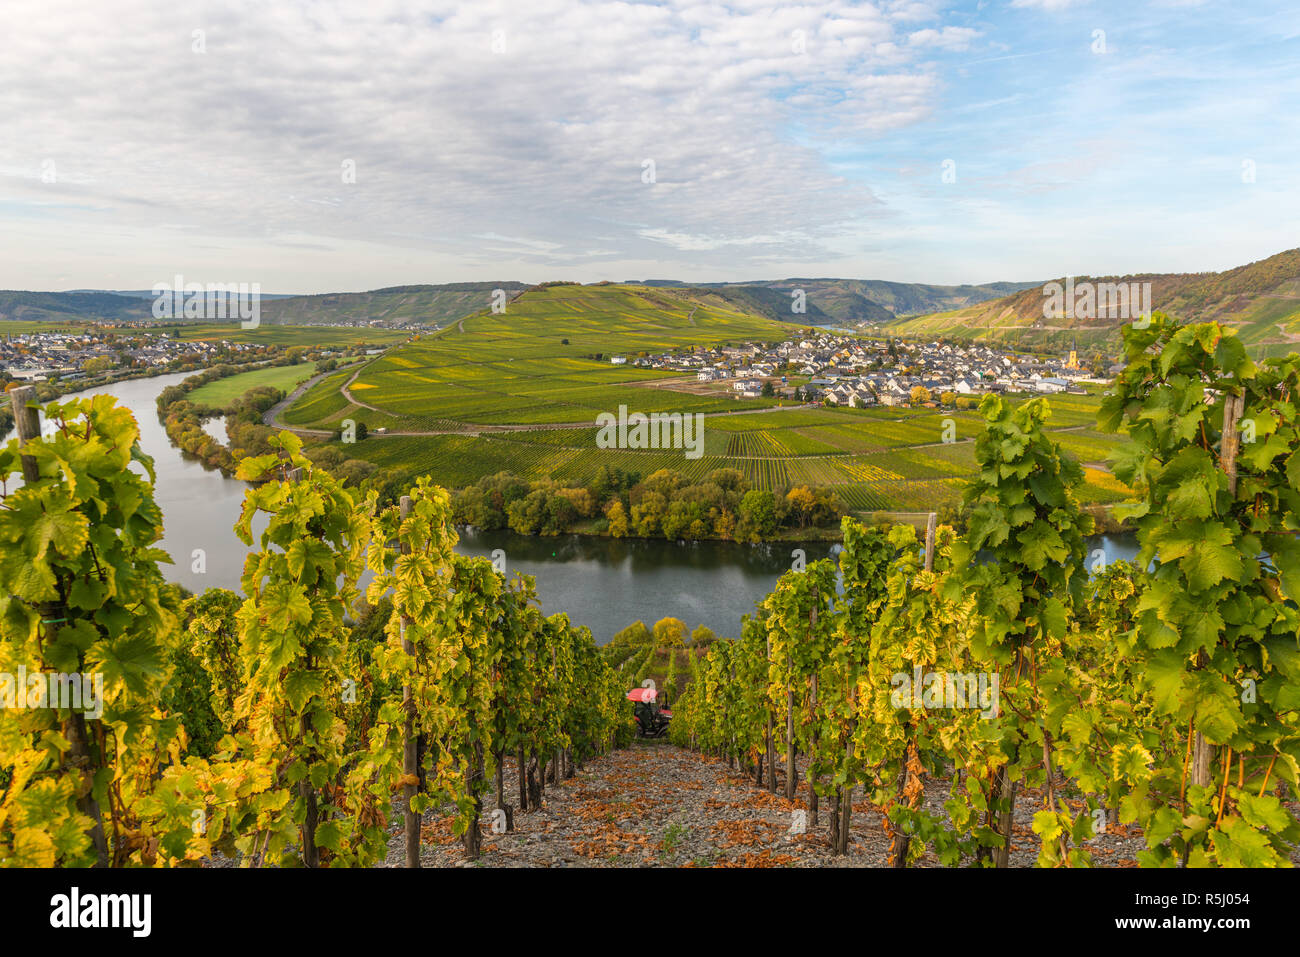 Pente de la Moselle à Leiwen, paysage avec vignobles le long de la Moselle et de la vallée. Rhénanie-Palatinat, Allemagne, Europe Banque D'Images